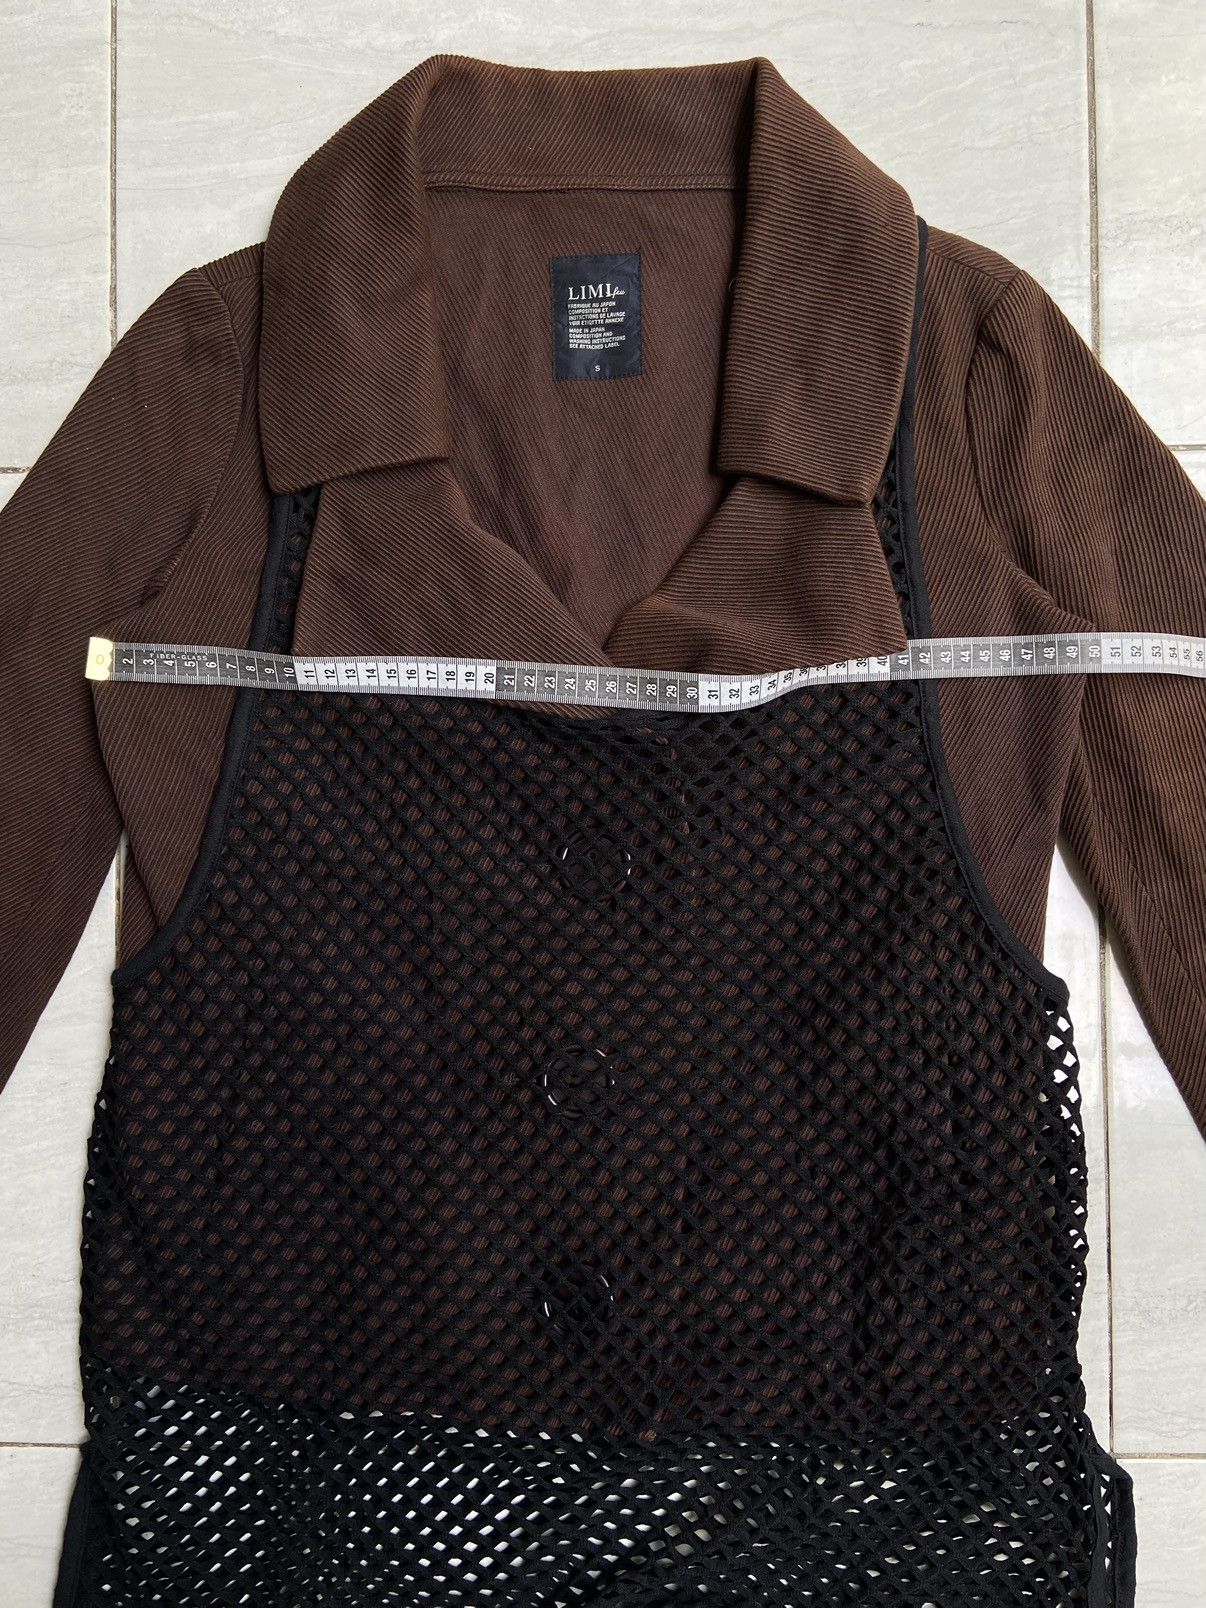 Yohji Yamamoto LIMI FEU Brown Blazer Vest Size US S / EU 44-46 / 1 - 8 Thumbnail